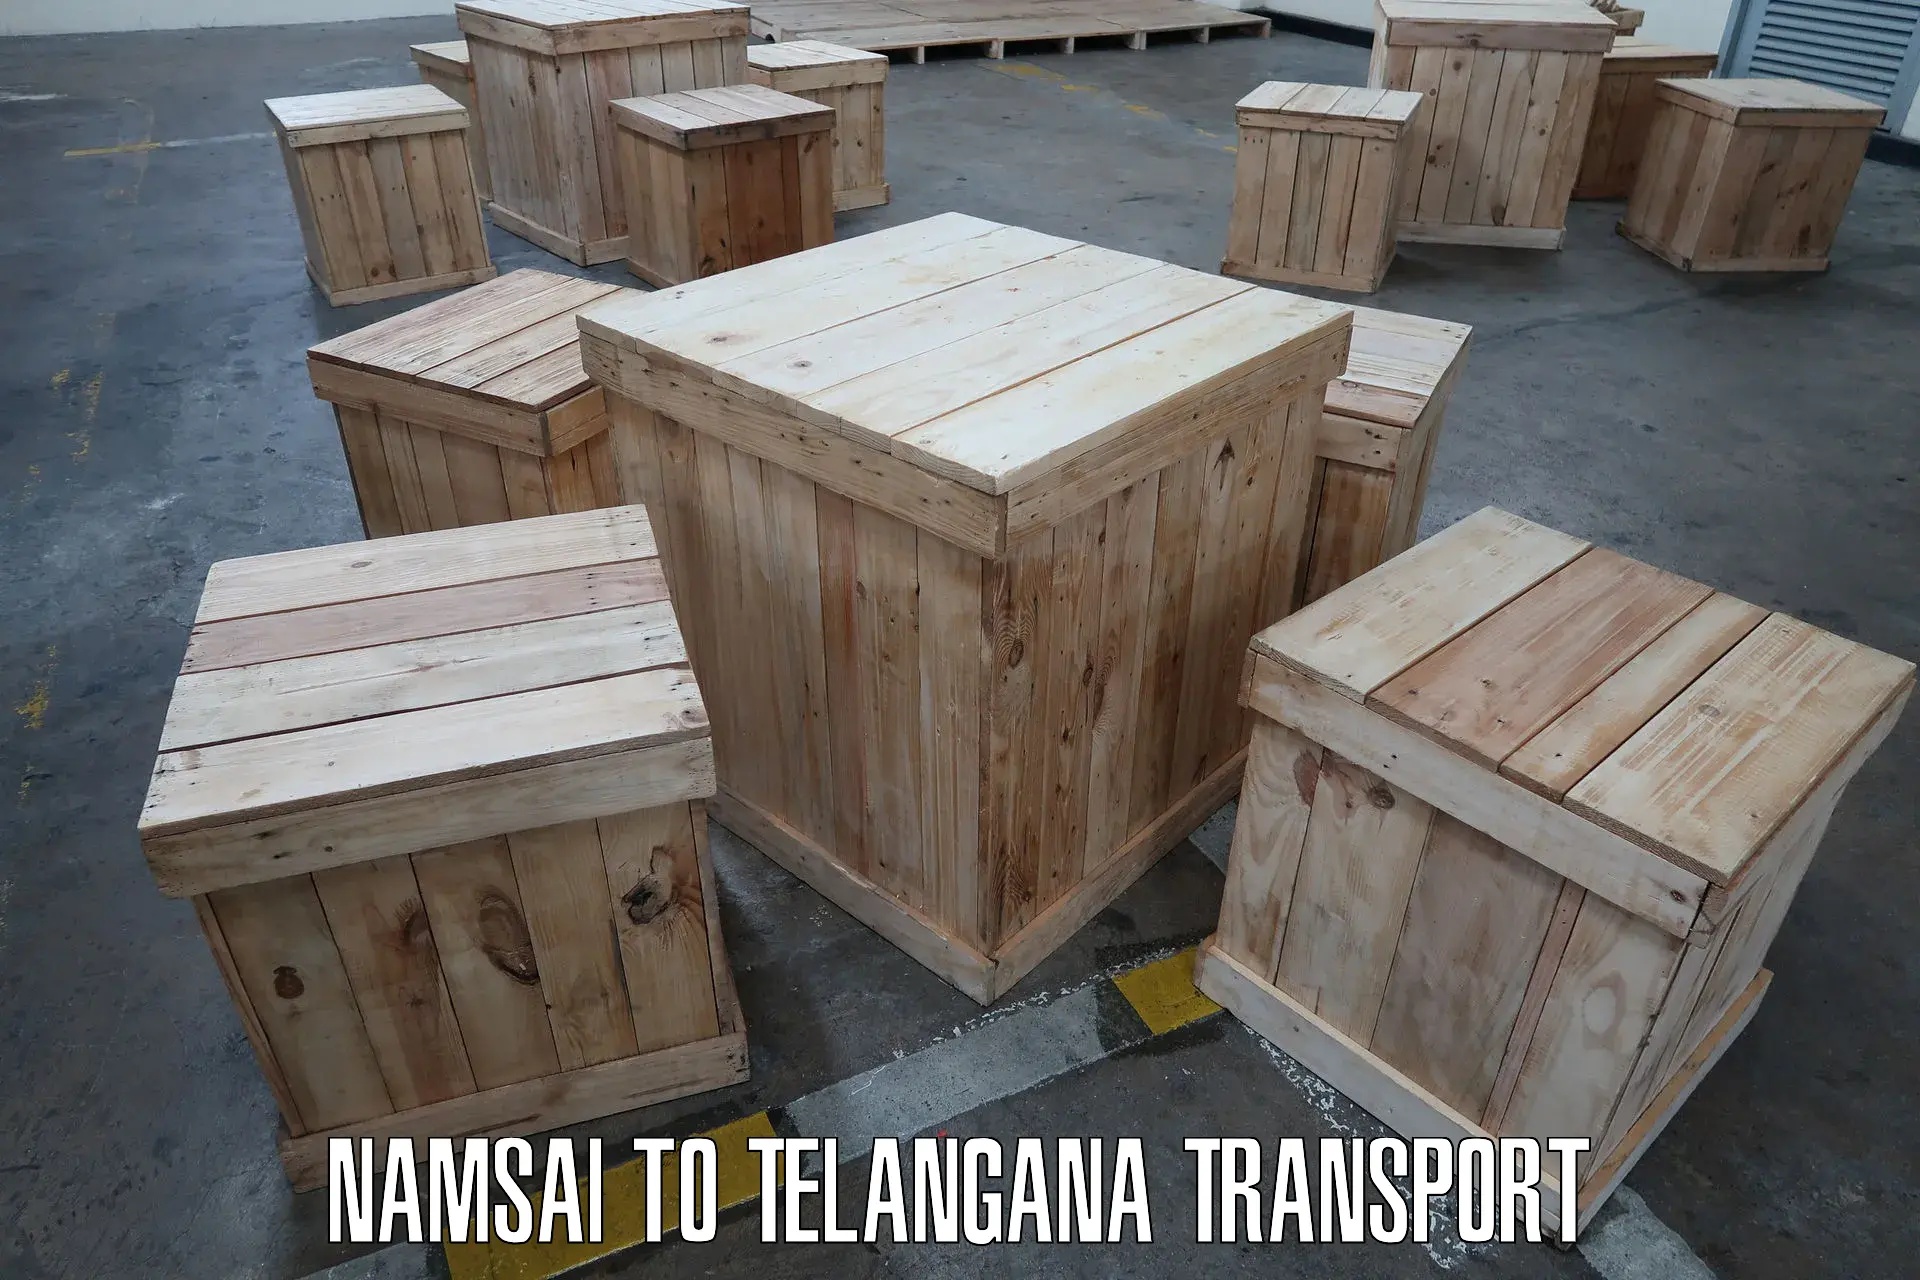 Transport in sharing Namsai to Rayaparthi